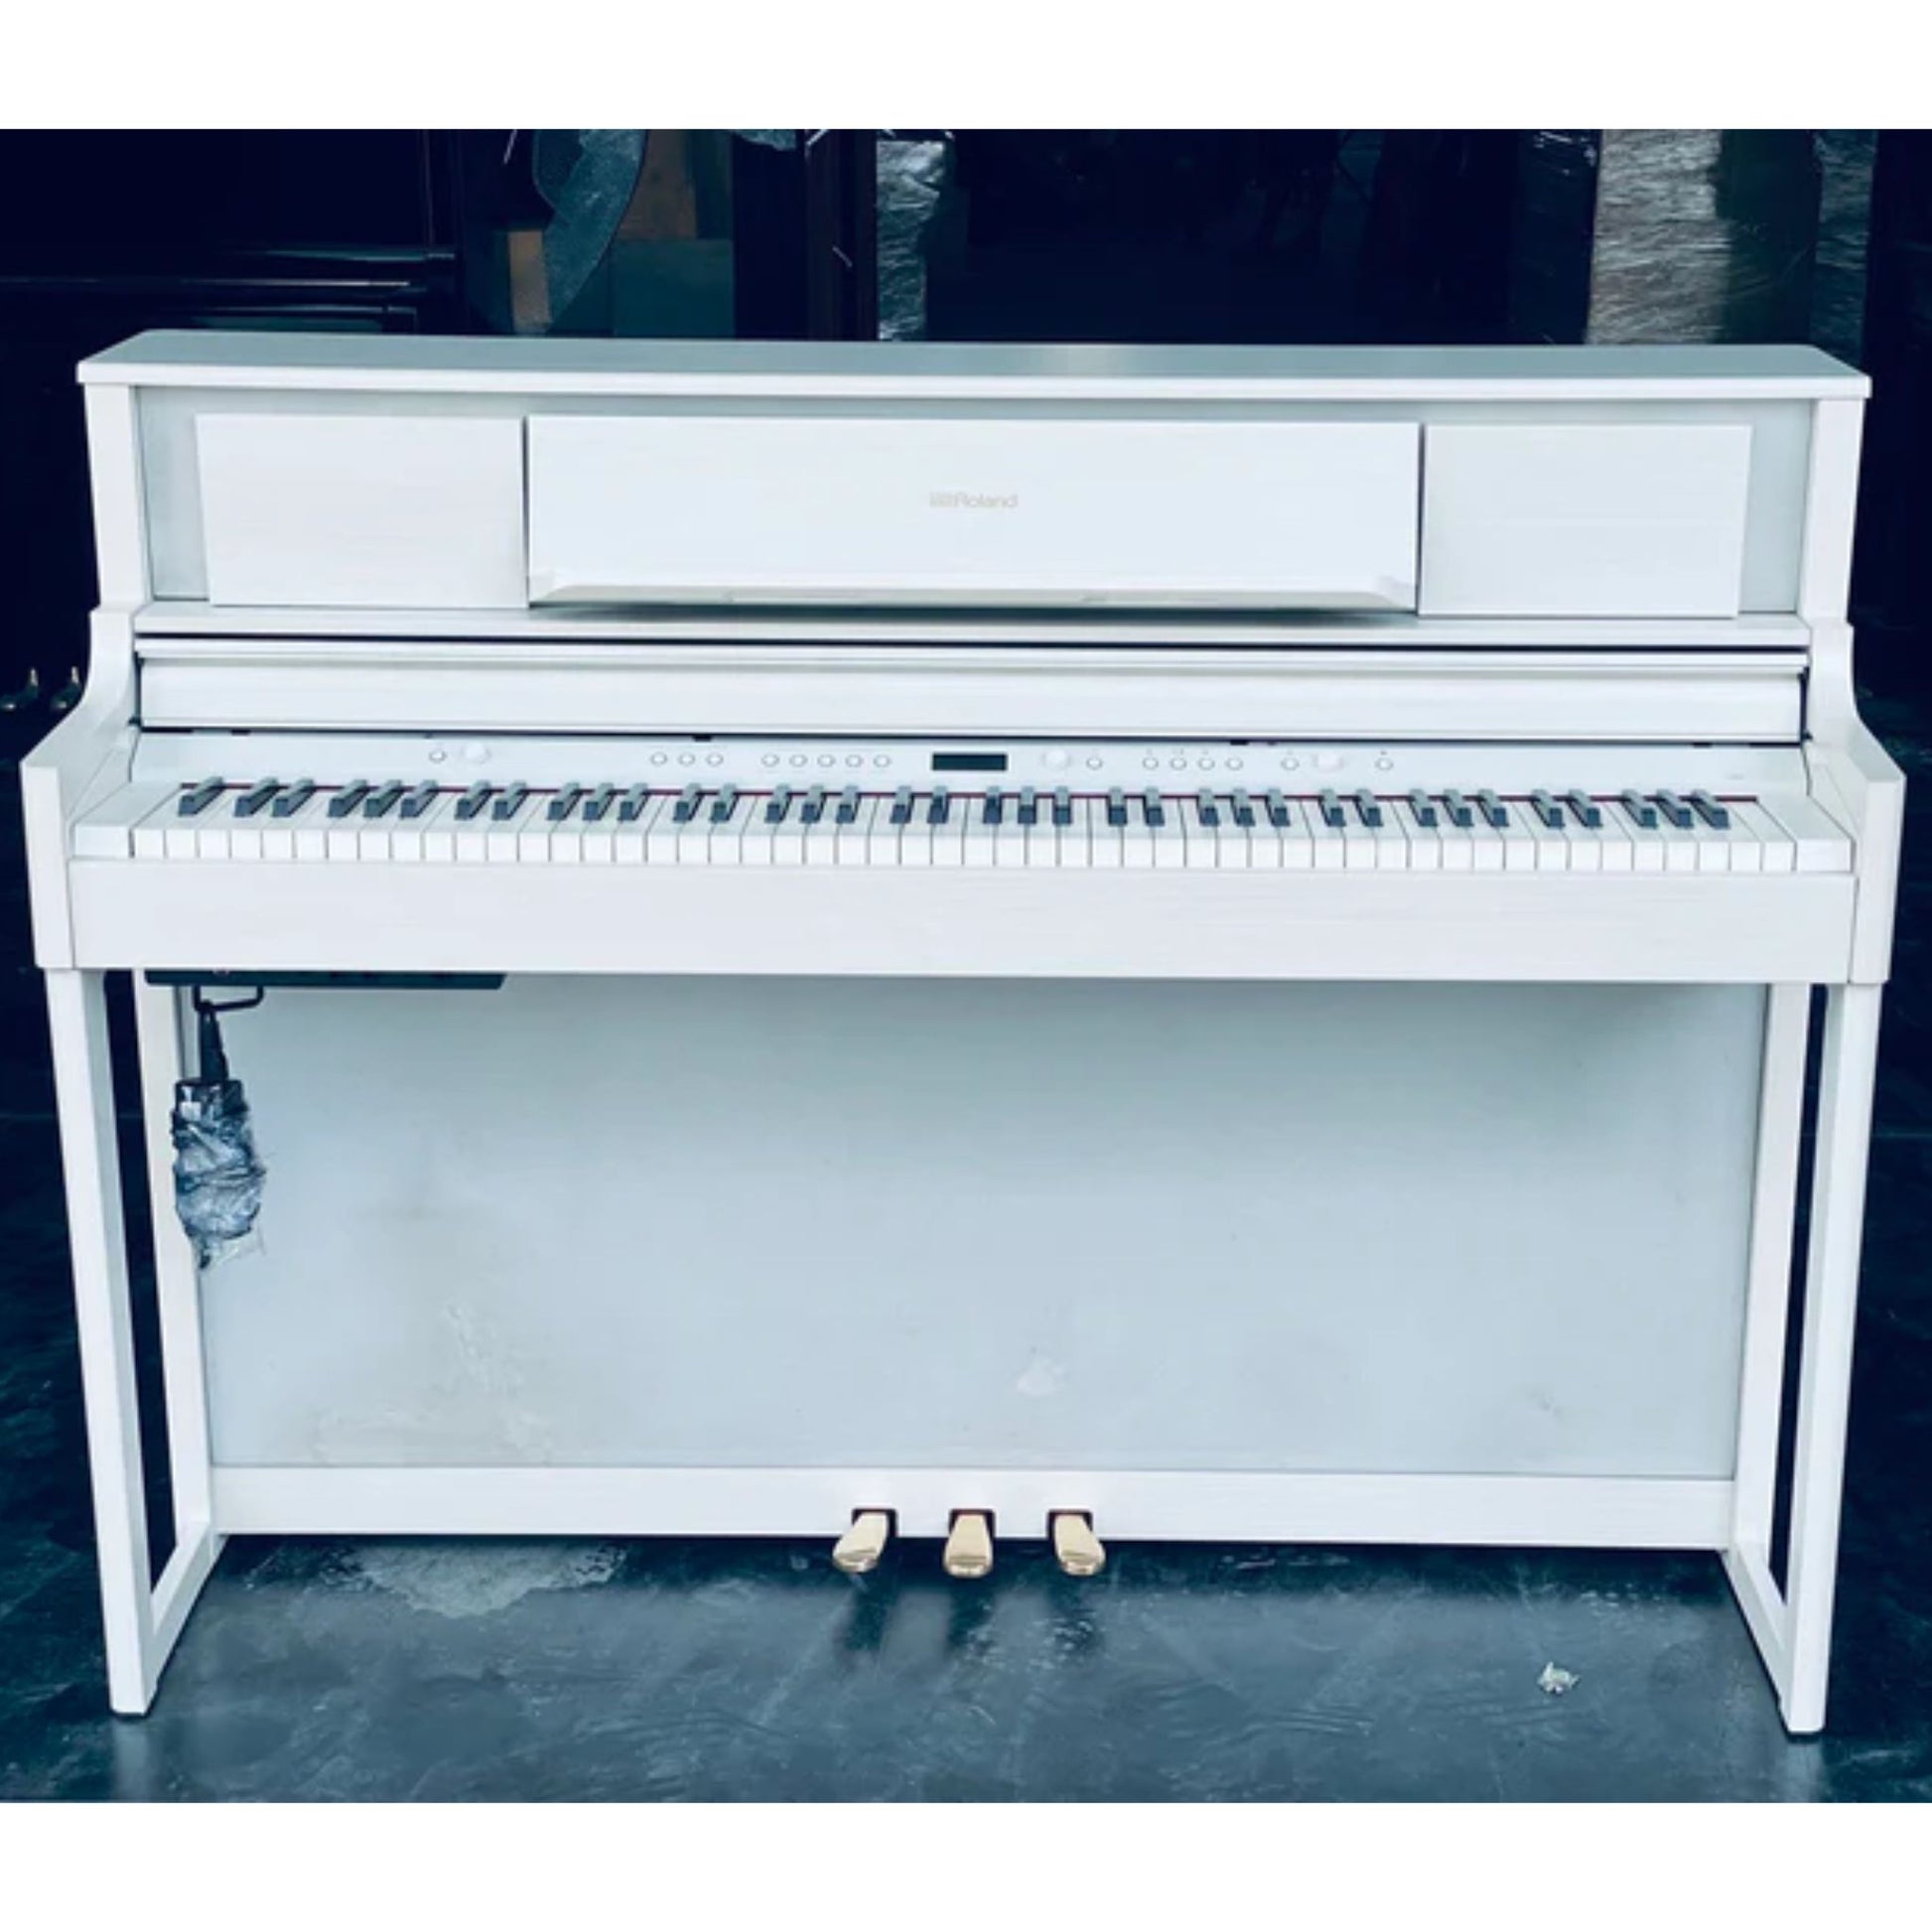 Đàn Piano Điện Roland LX-705GP - Qua Sử Dụng - Việt Music